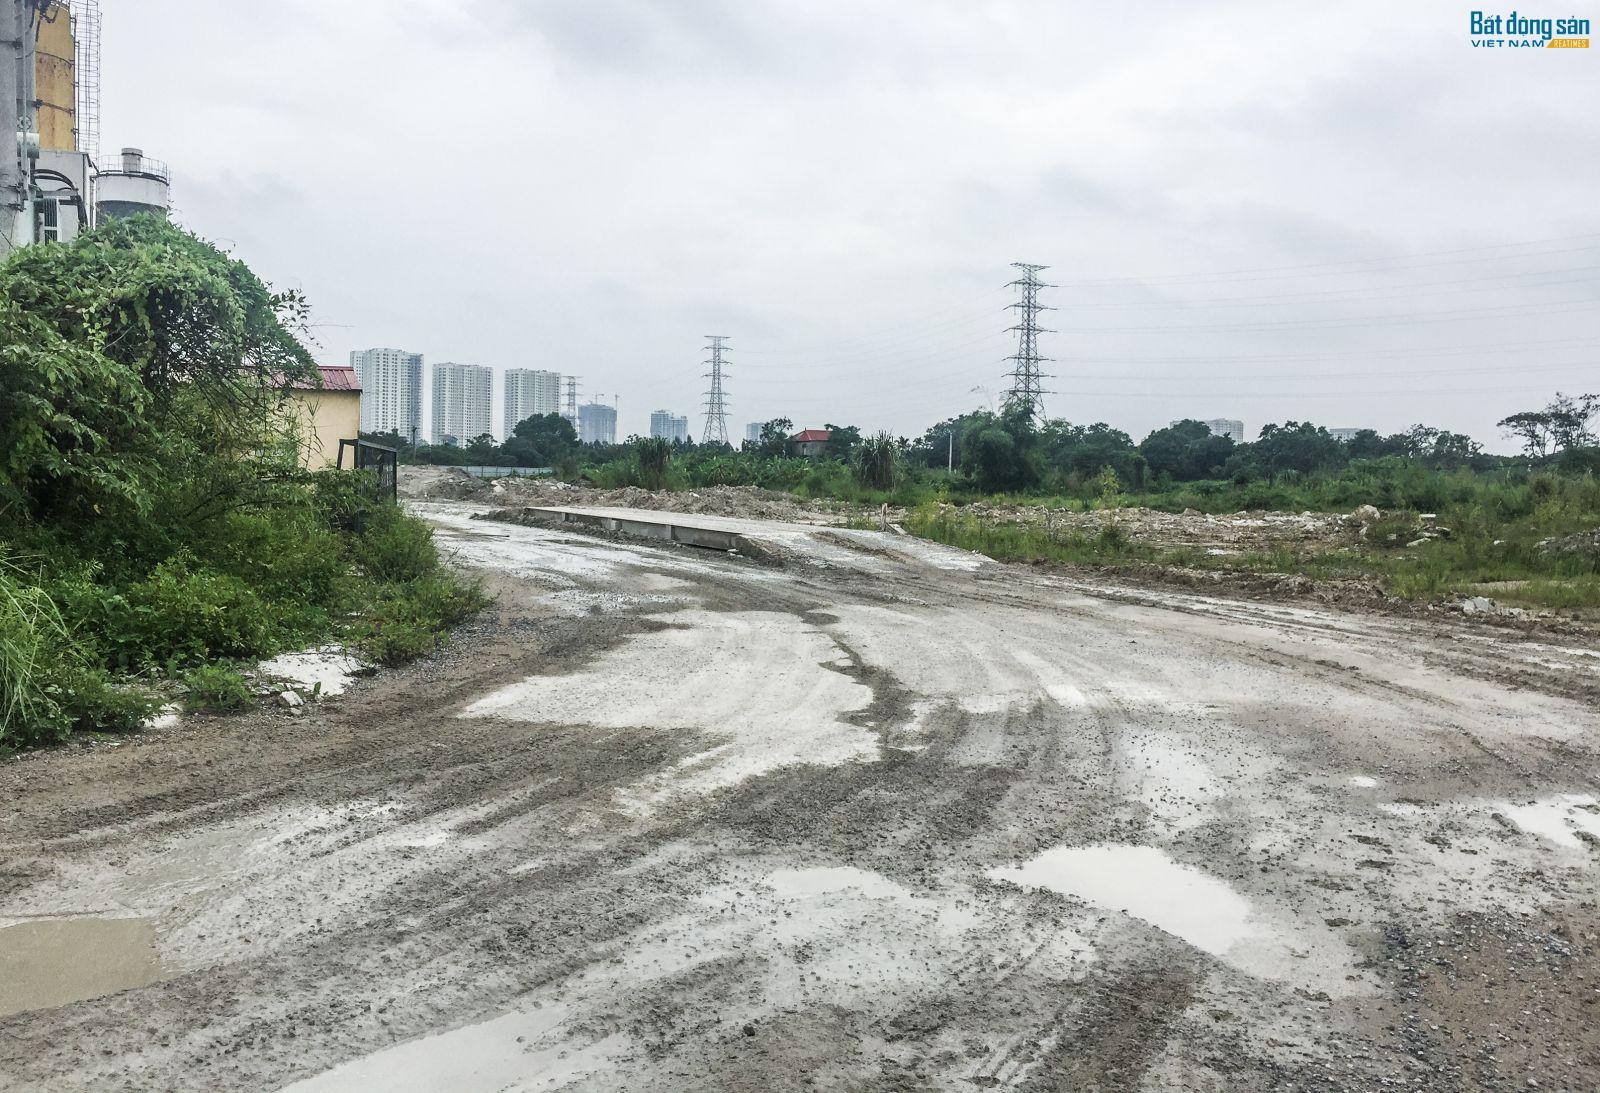 Đến nay, sau hơn 1 thập kỳ, dự án Khu đô thị mới Thịnh Liệt vẫn chỉ là bãi đất trống mọc đầy cỏ dại.